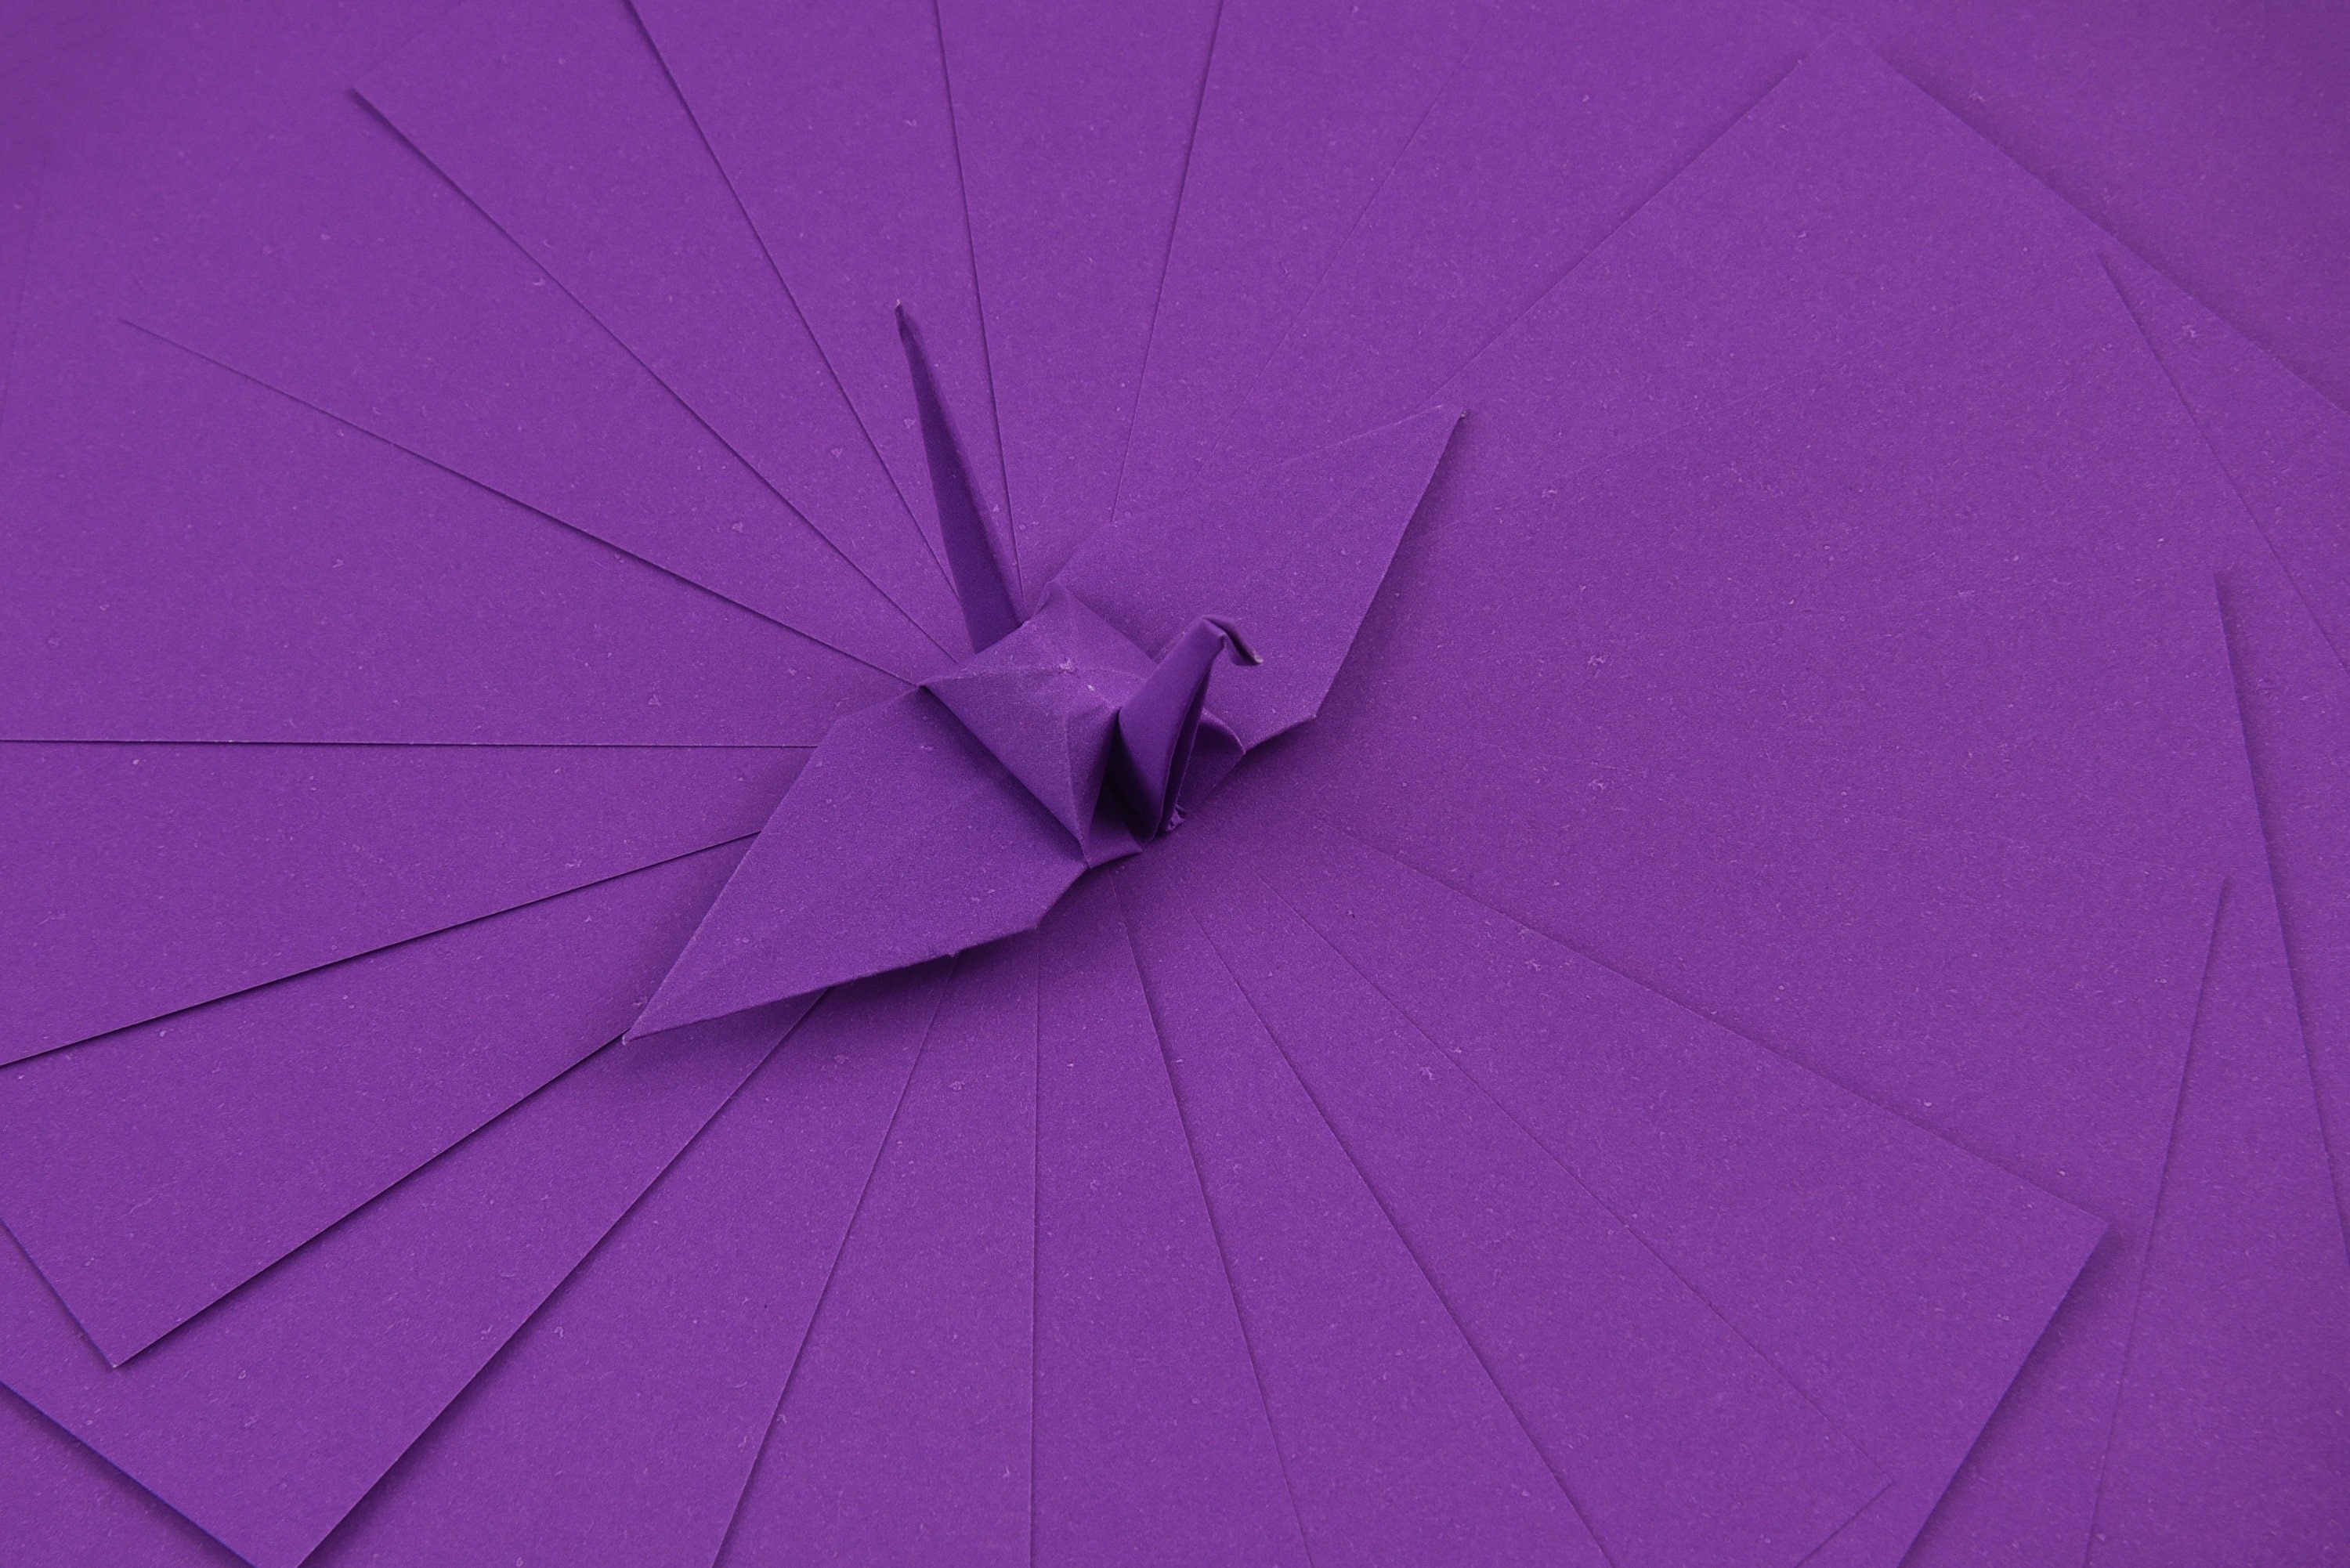 100 fogli di carta origami - 3x3 pollici - Confezione di carta quadrata per piegare, gru origami e decorazioni - P04